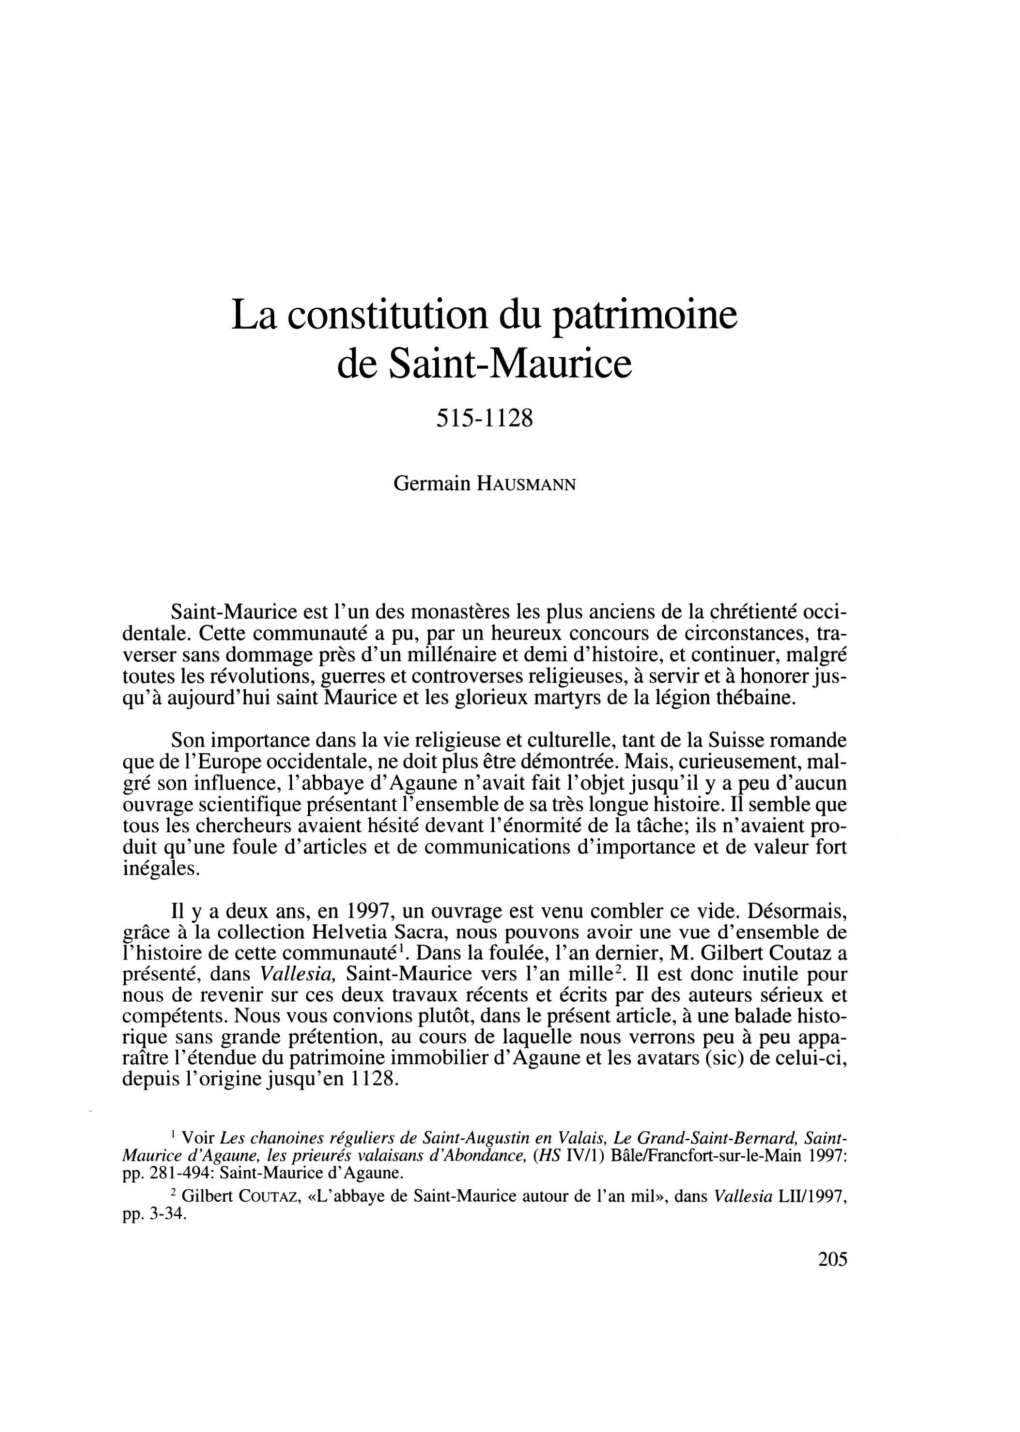 La Constitution Du Patrimoine De Saint-Maurice